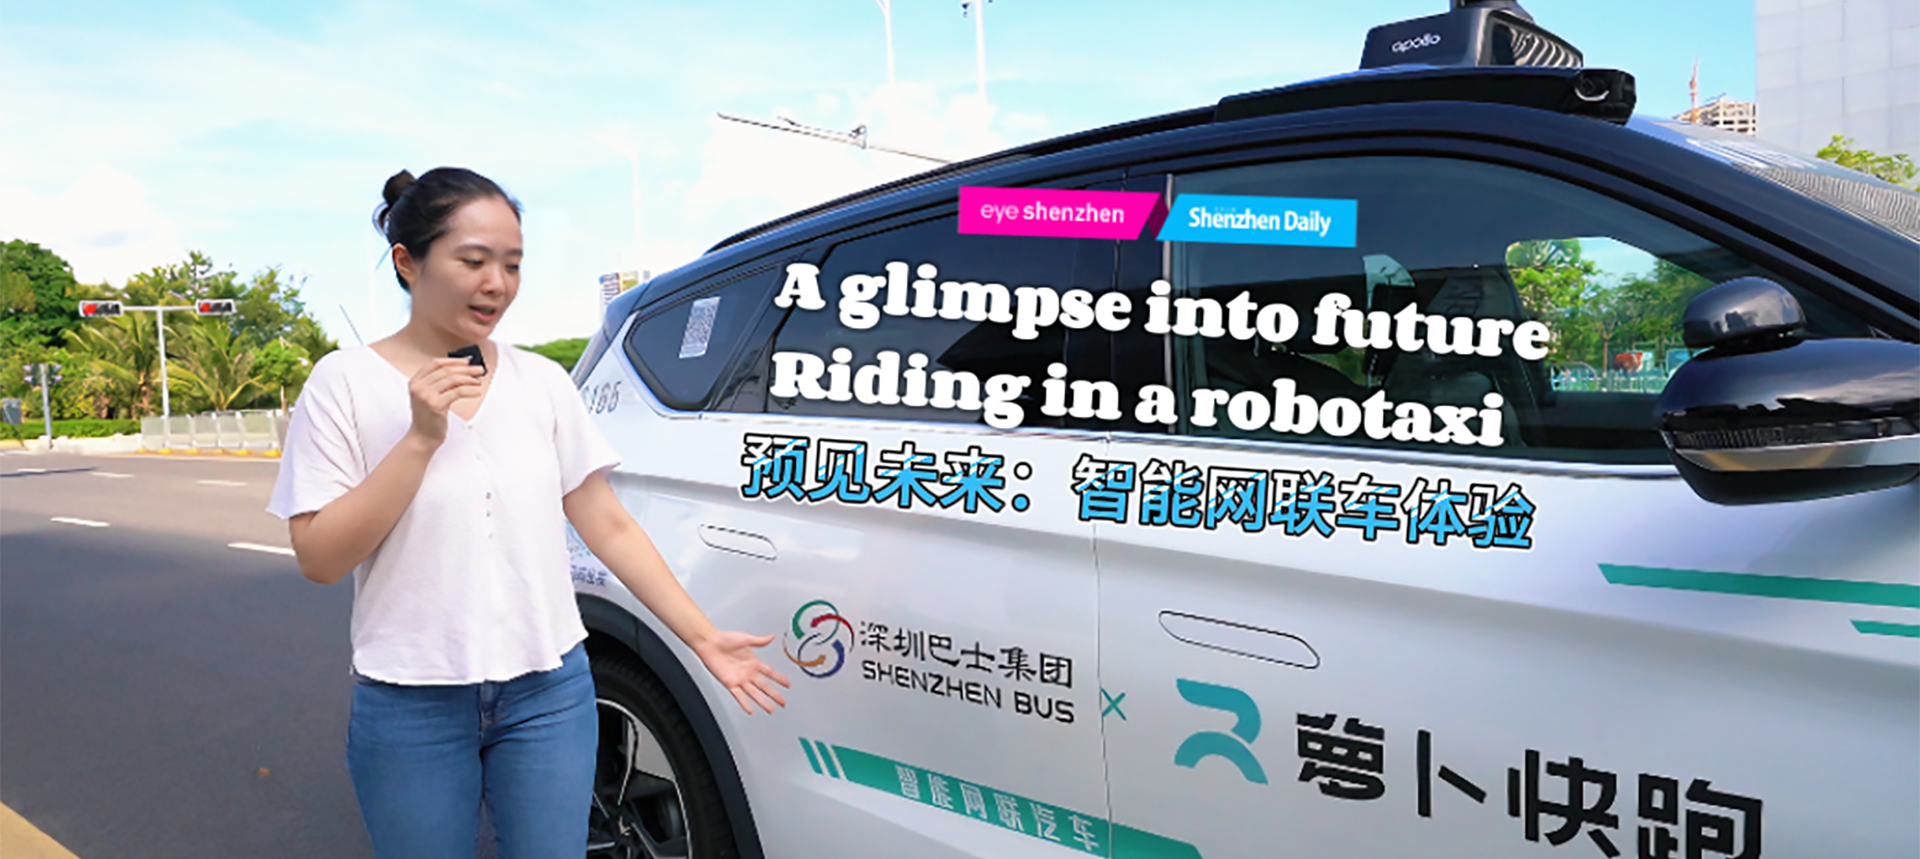 Um vislumbre do futuro: andando em um táxi robô